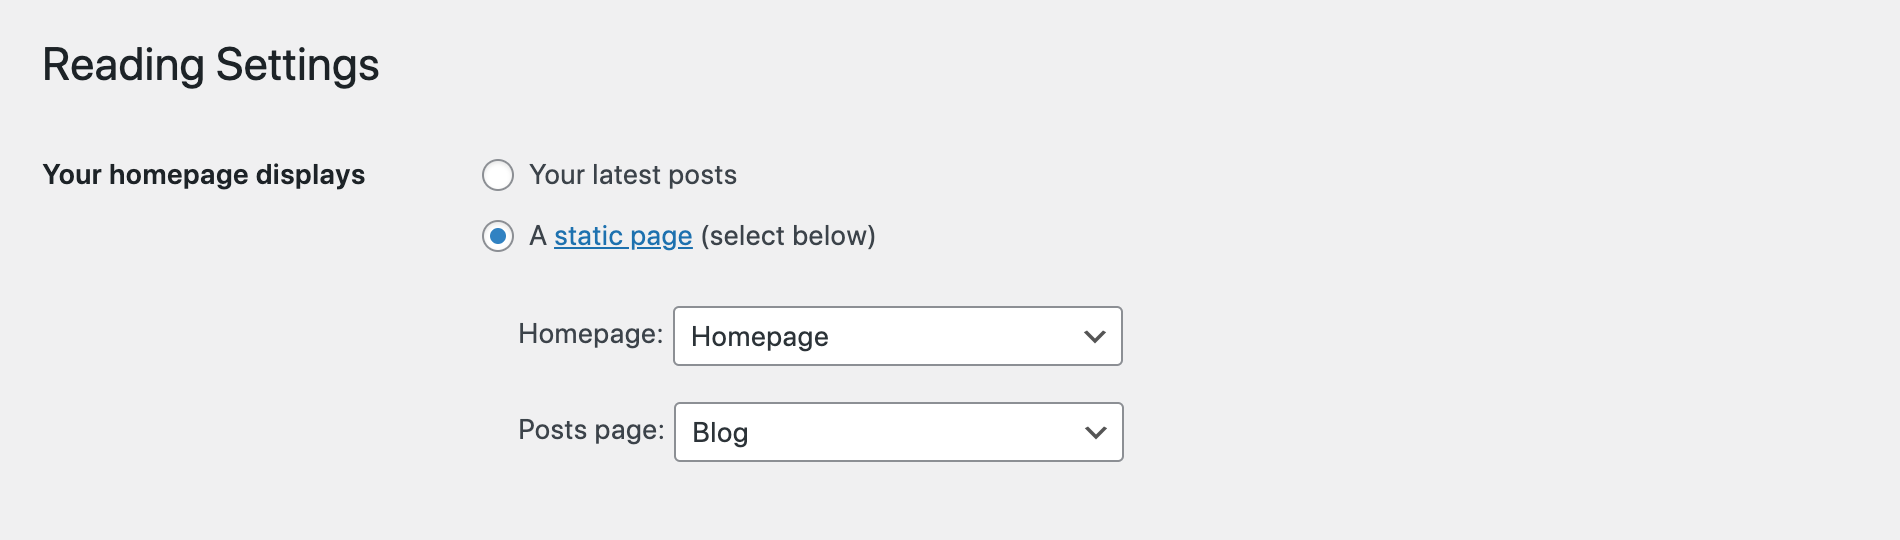 WordPress Reading Settings: Homepage Displays